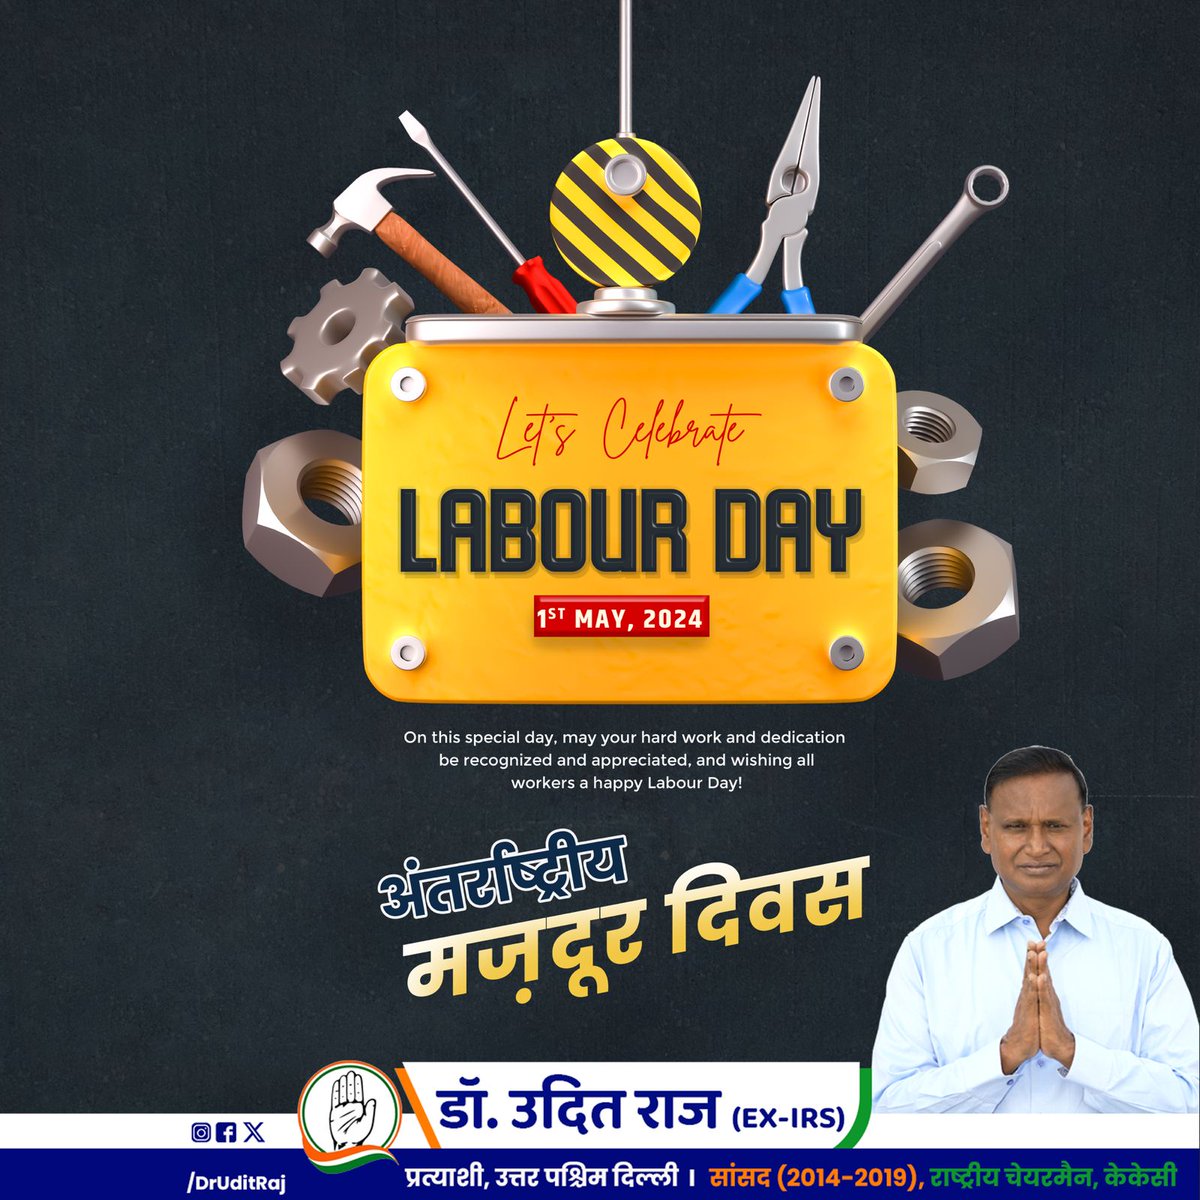 अंतर्राष्ट्रीय श्रमिक दिवस के अवसर पर देश की उन्नति में अपना अमूल्य योगदान देने वाले समस्त श्रमिक भाइयों एवं बहनों को बधाई एवं शुभकामनाएं। #labourday @INCIndia @INCDelhi हाथ से बदलेगा हालात ..... उदित से होगा उदय ..... #CongressforProgress #GintiKaro #PehliNaukriPakki…